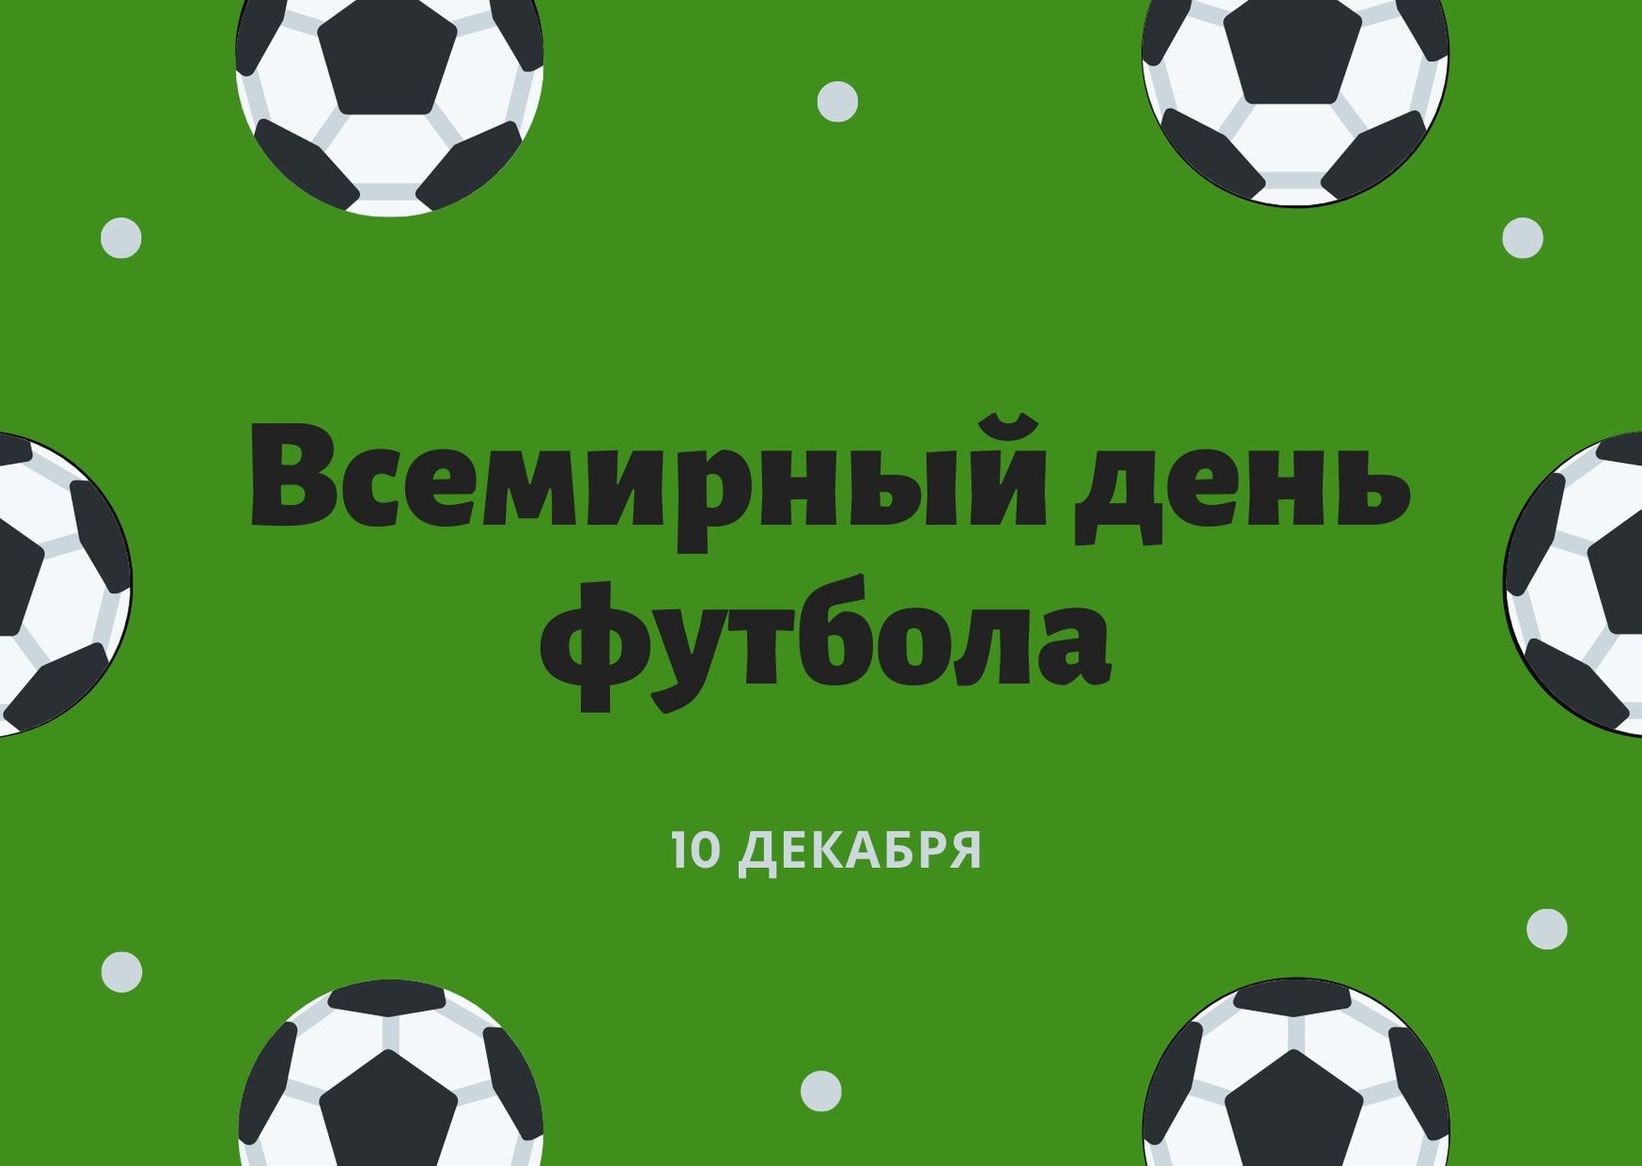 Открытки всемирный день футбола- Скачать бесплатно на paraskevat.ru